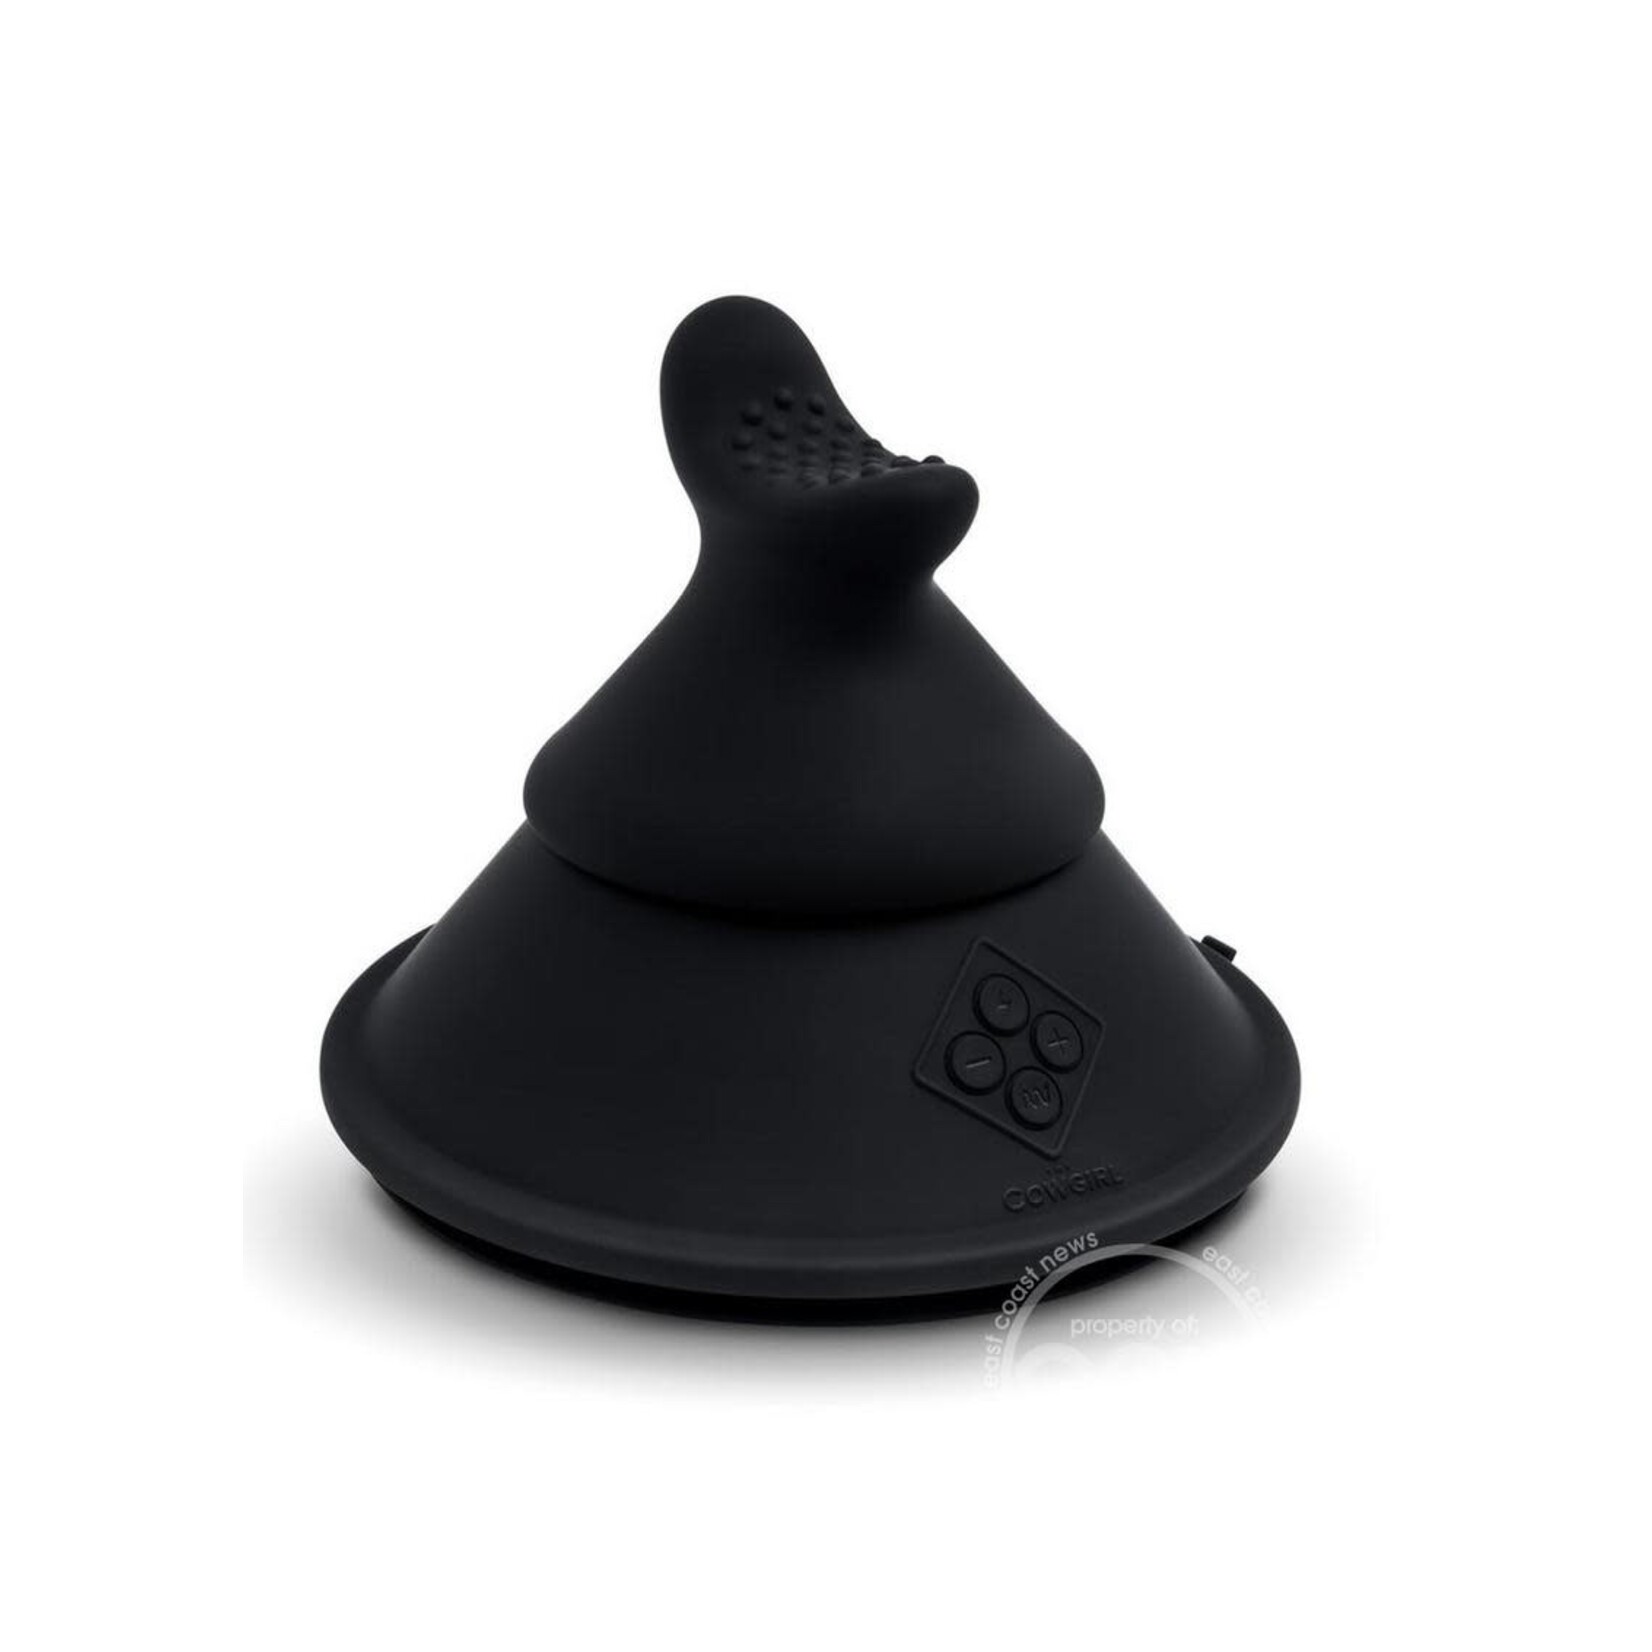 Cowgirl Cone Premium Sex Machine with Remote Control - Black